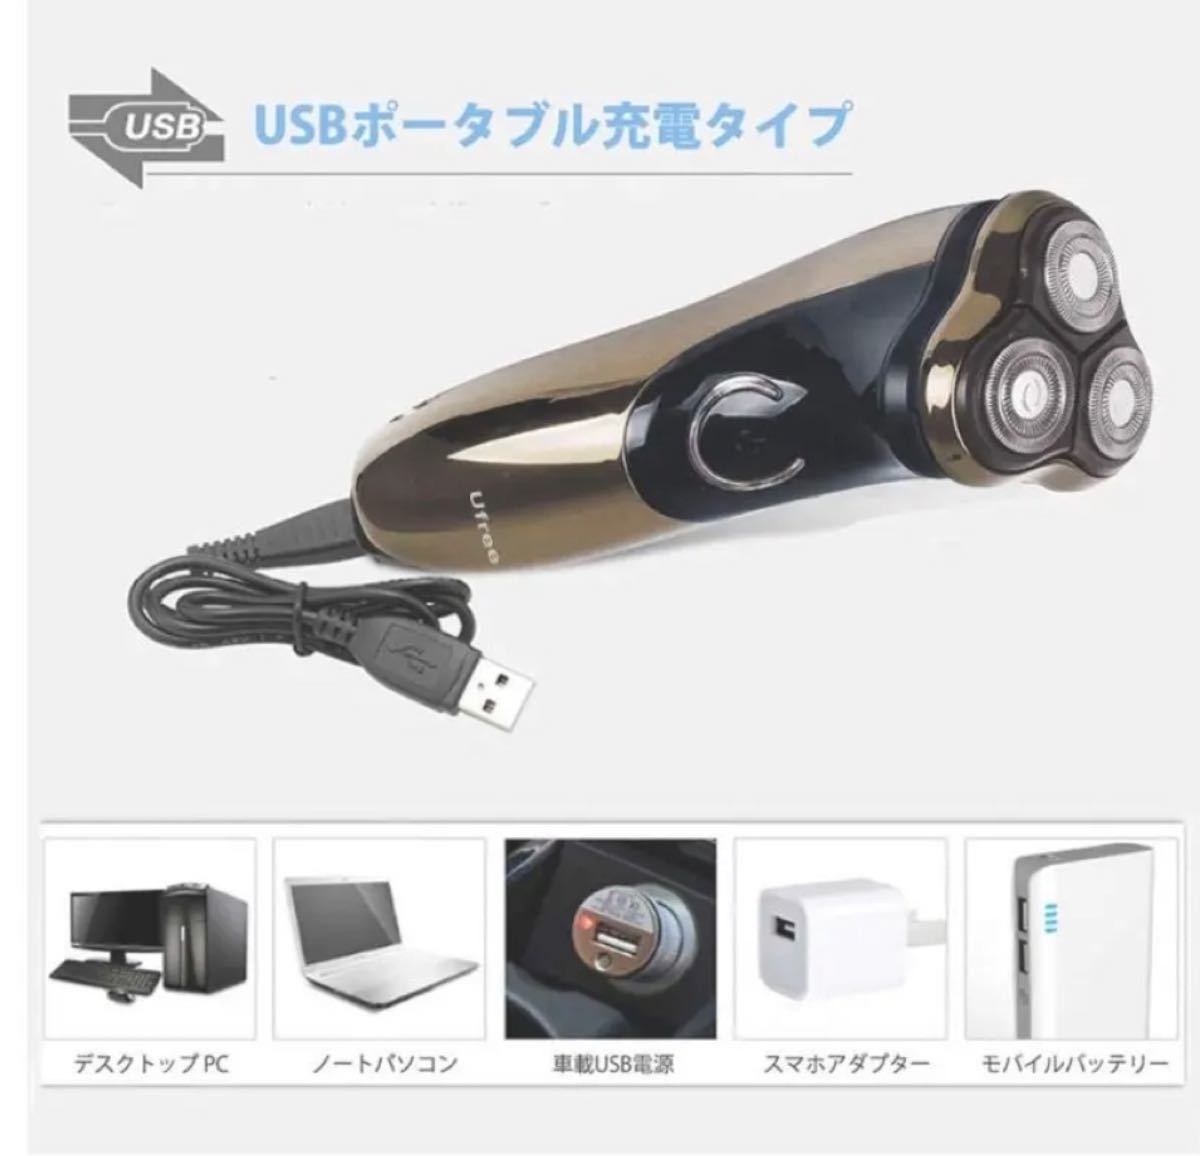 新品★ 電気シェーバー回転式 3枚刃 USB充電式 ひげそり メンズシェーバー 電気カミソリ